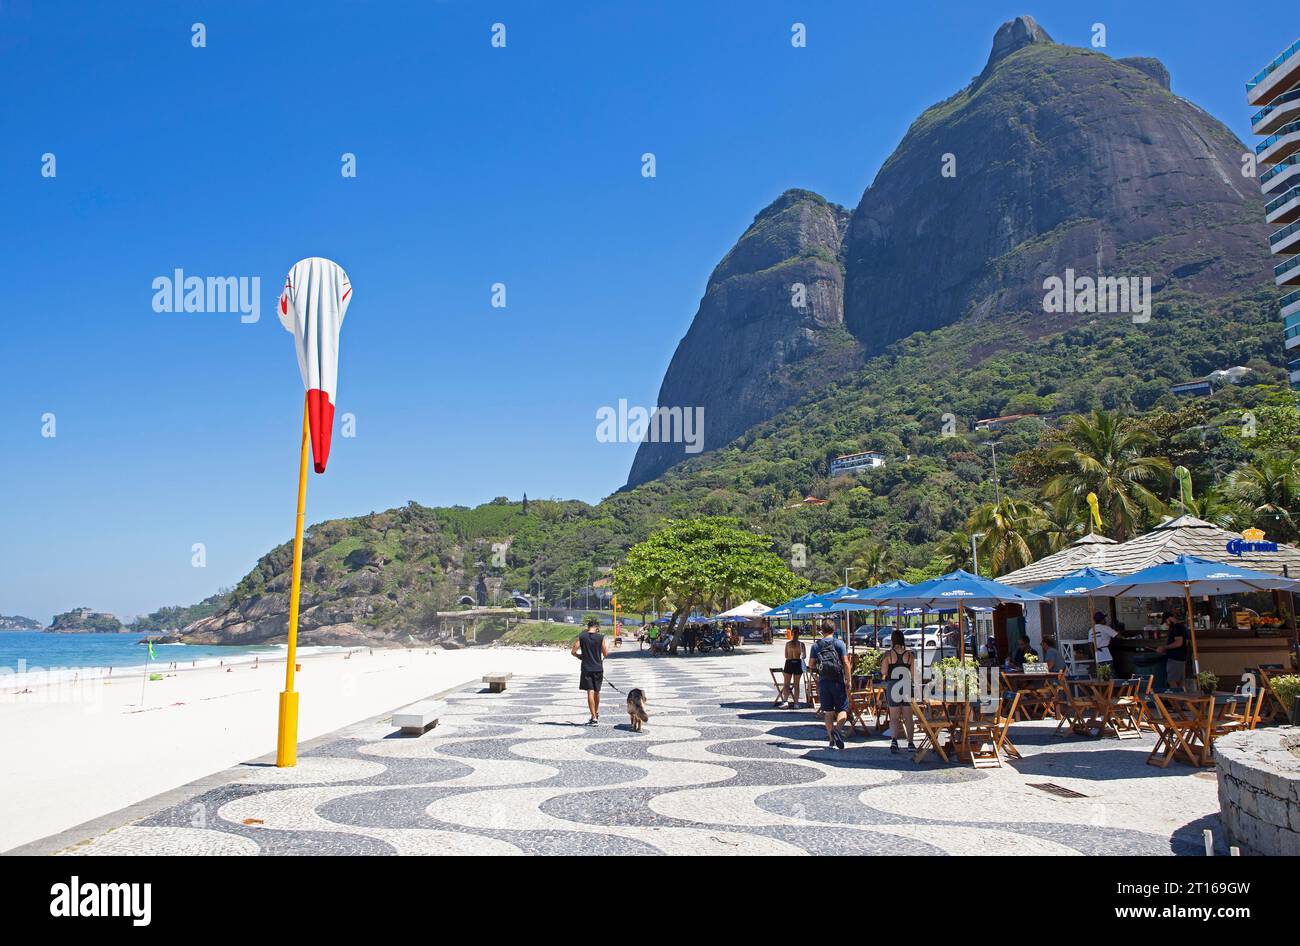 Beach promenade at Praia de Sao Conrado, Rio de Janeiro, State of Rio de Janeiro, Brazil Stock Photo